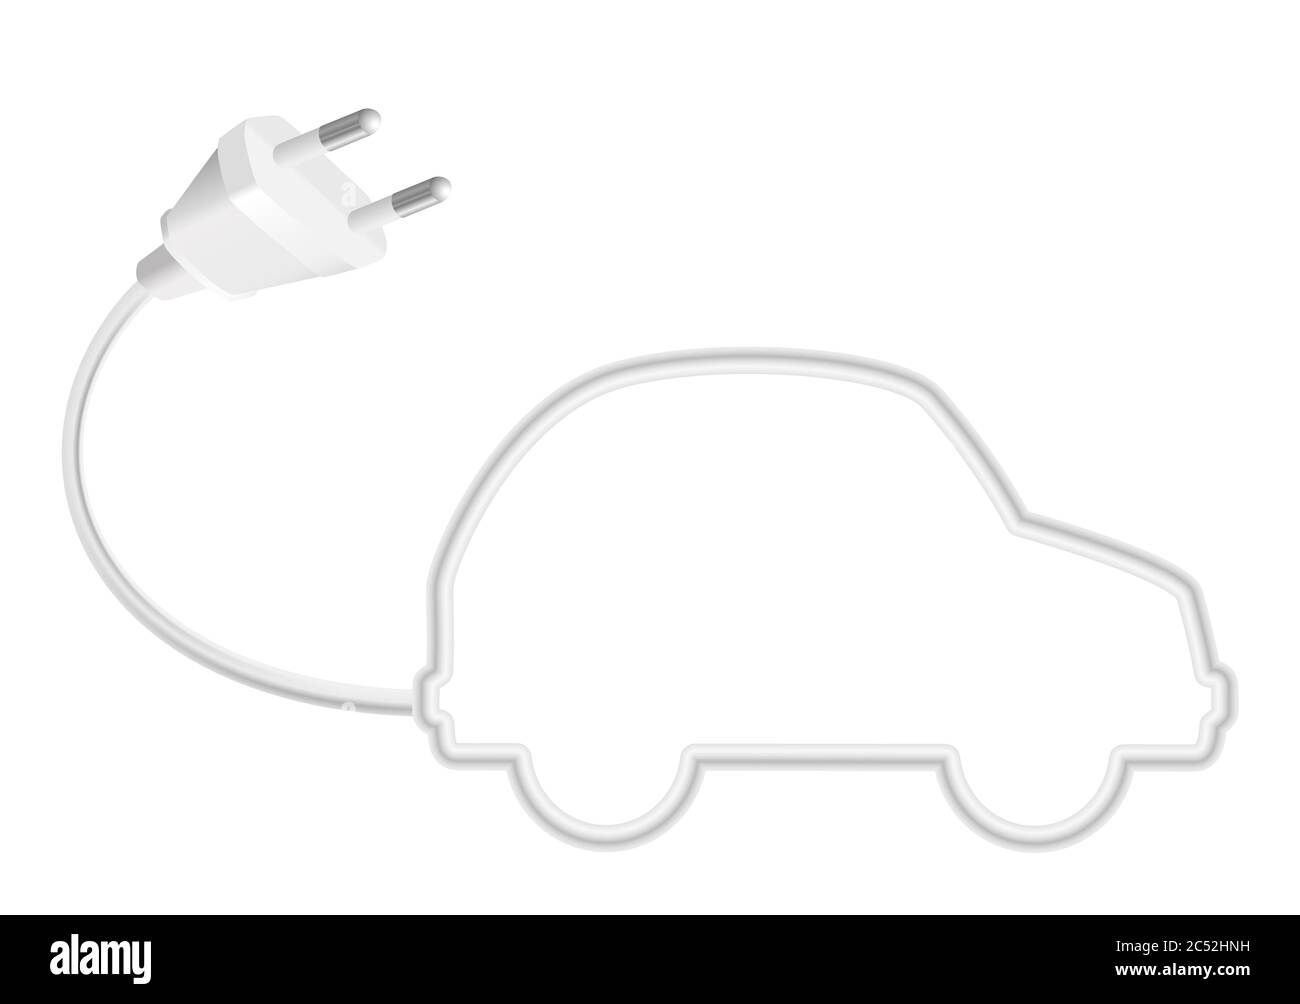 Elektroauto Symbol mit Stecker und Kabel bilden die Silhouette eines niedlichen kleinen Auto, symbolisch für umweltfreundliche alternative Energie, moderne Umwelt. Stockfoto